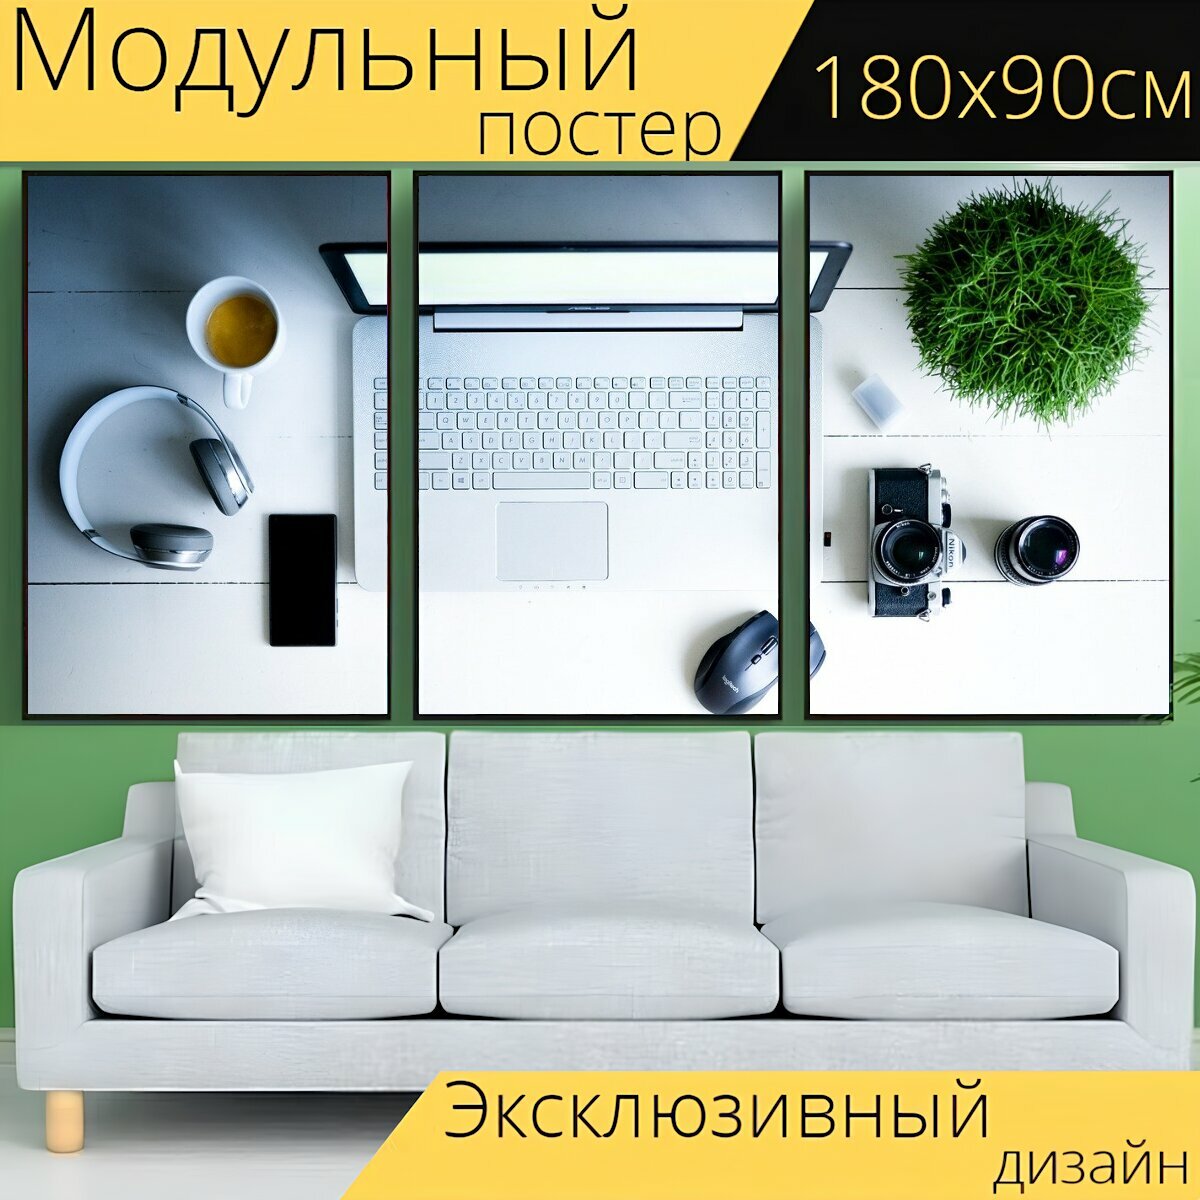 Модульный постер "Компьютер, ноутбук, рабочее место" 180 x 90 см. для интерьера